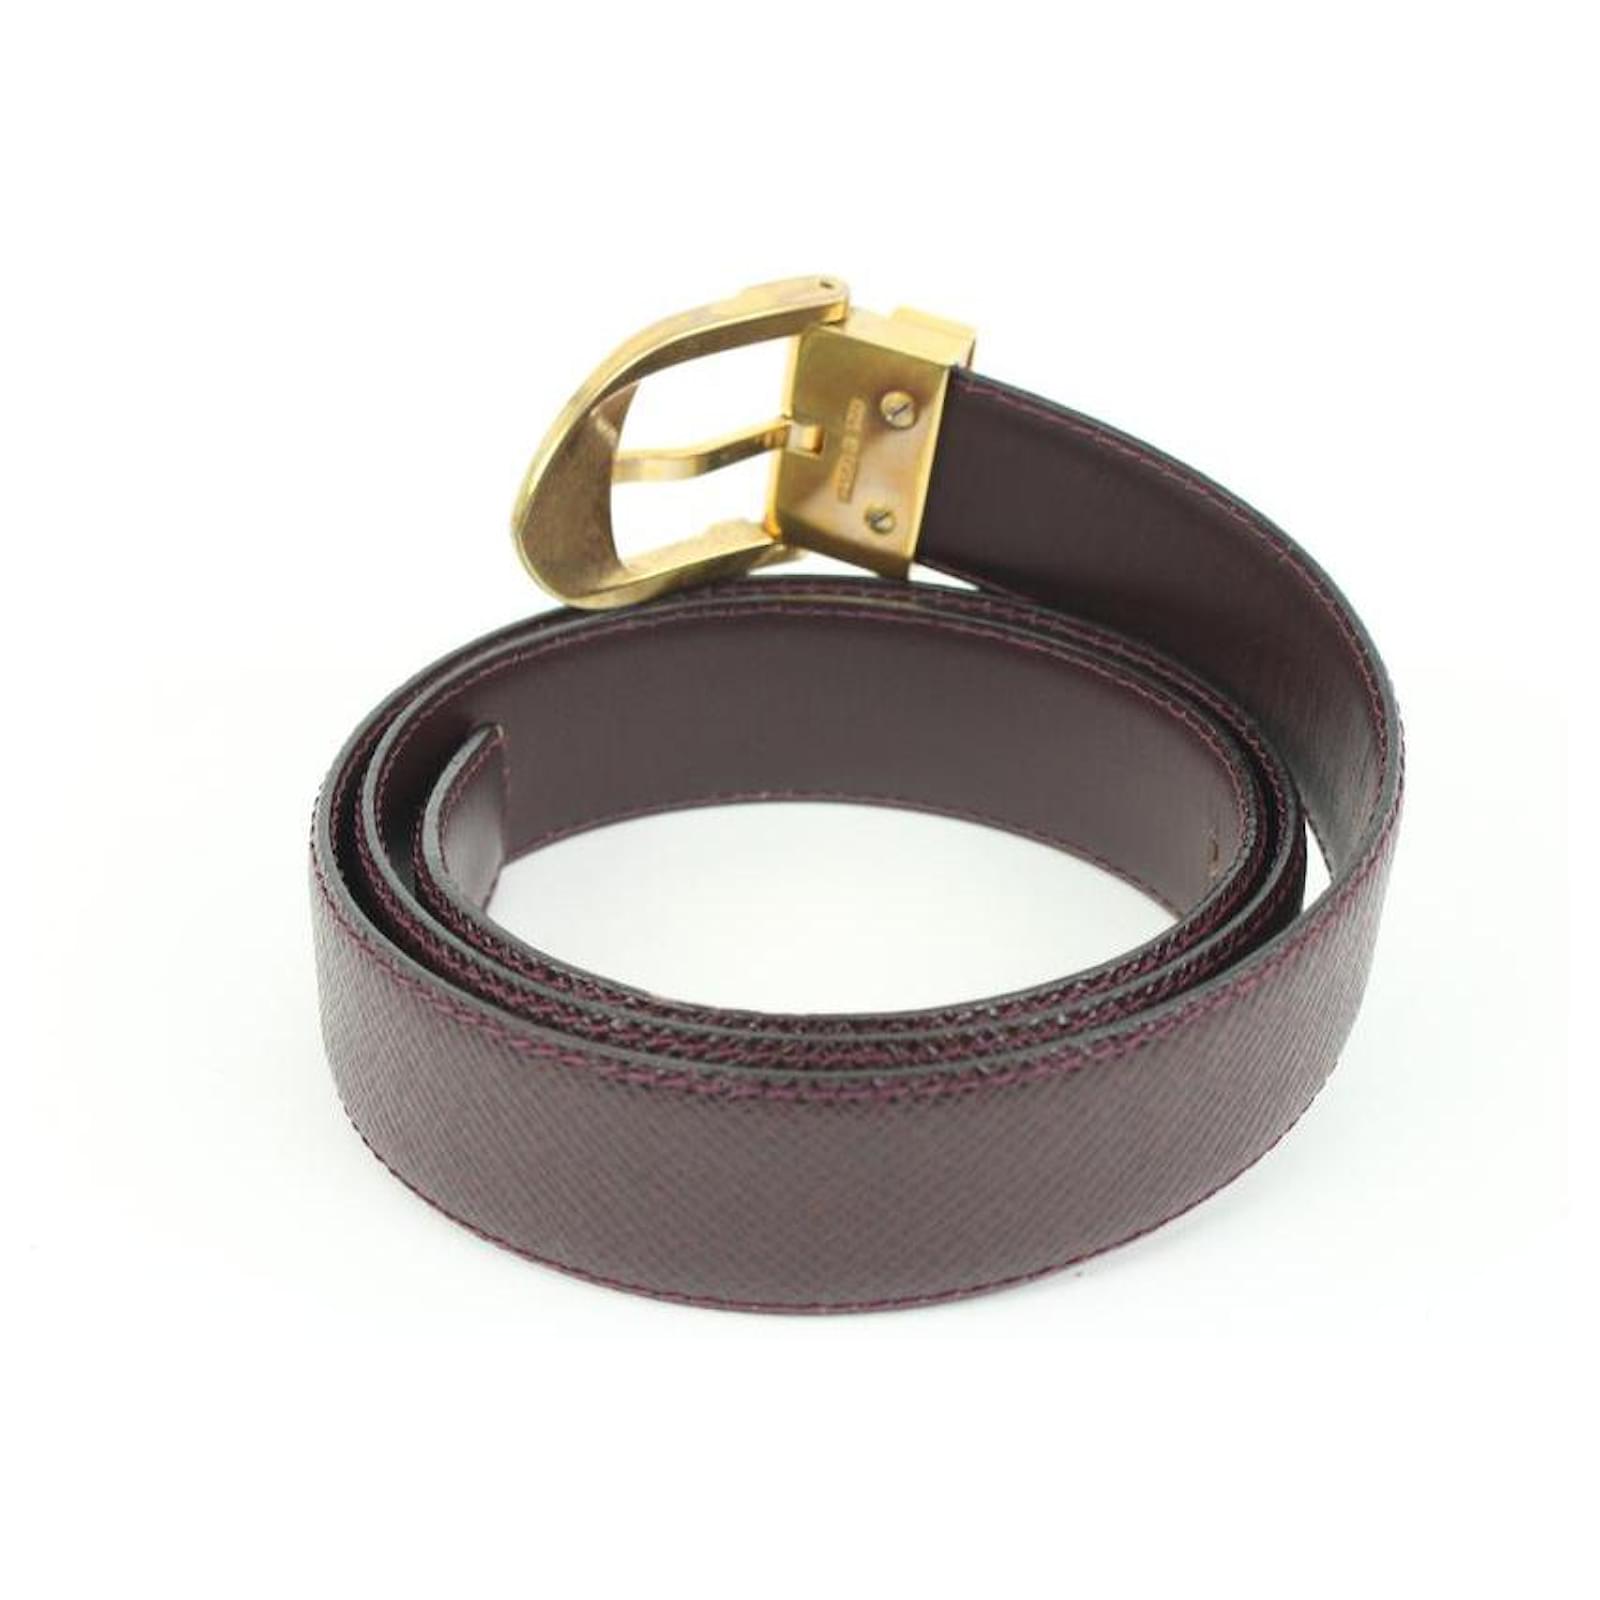 Authentic Louis Vuitton Black Epi Leather Ceinture Gold Buckle Belt Size 44